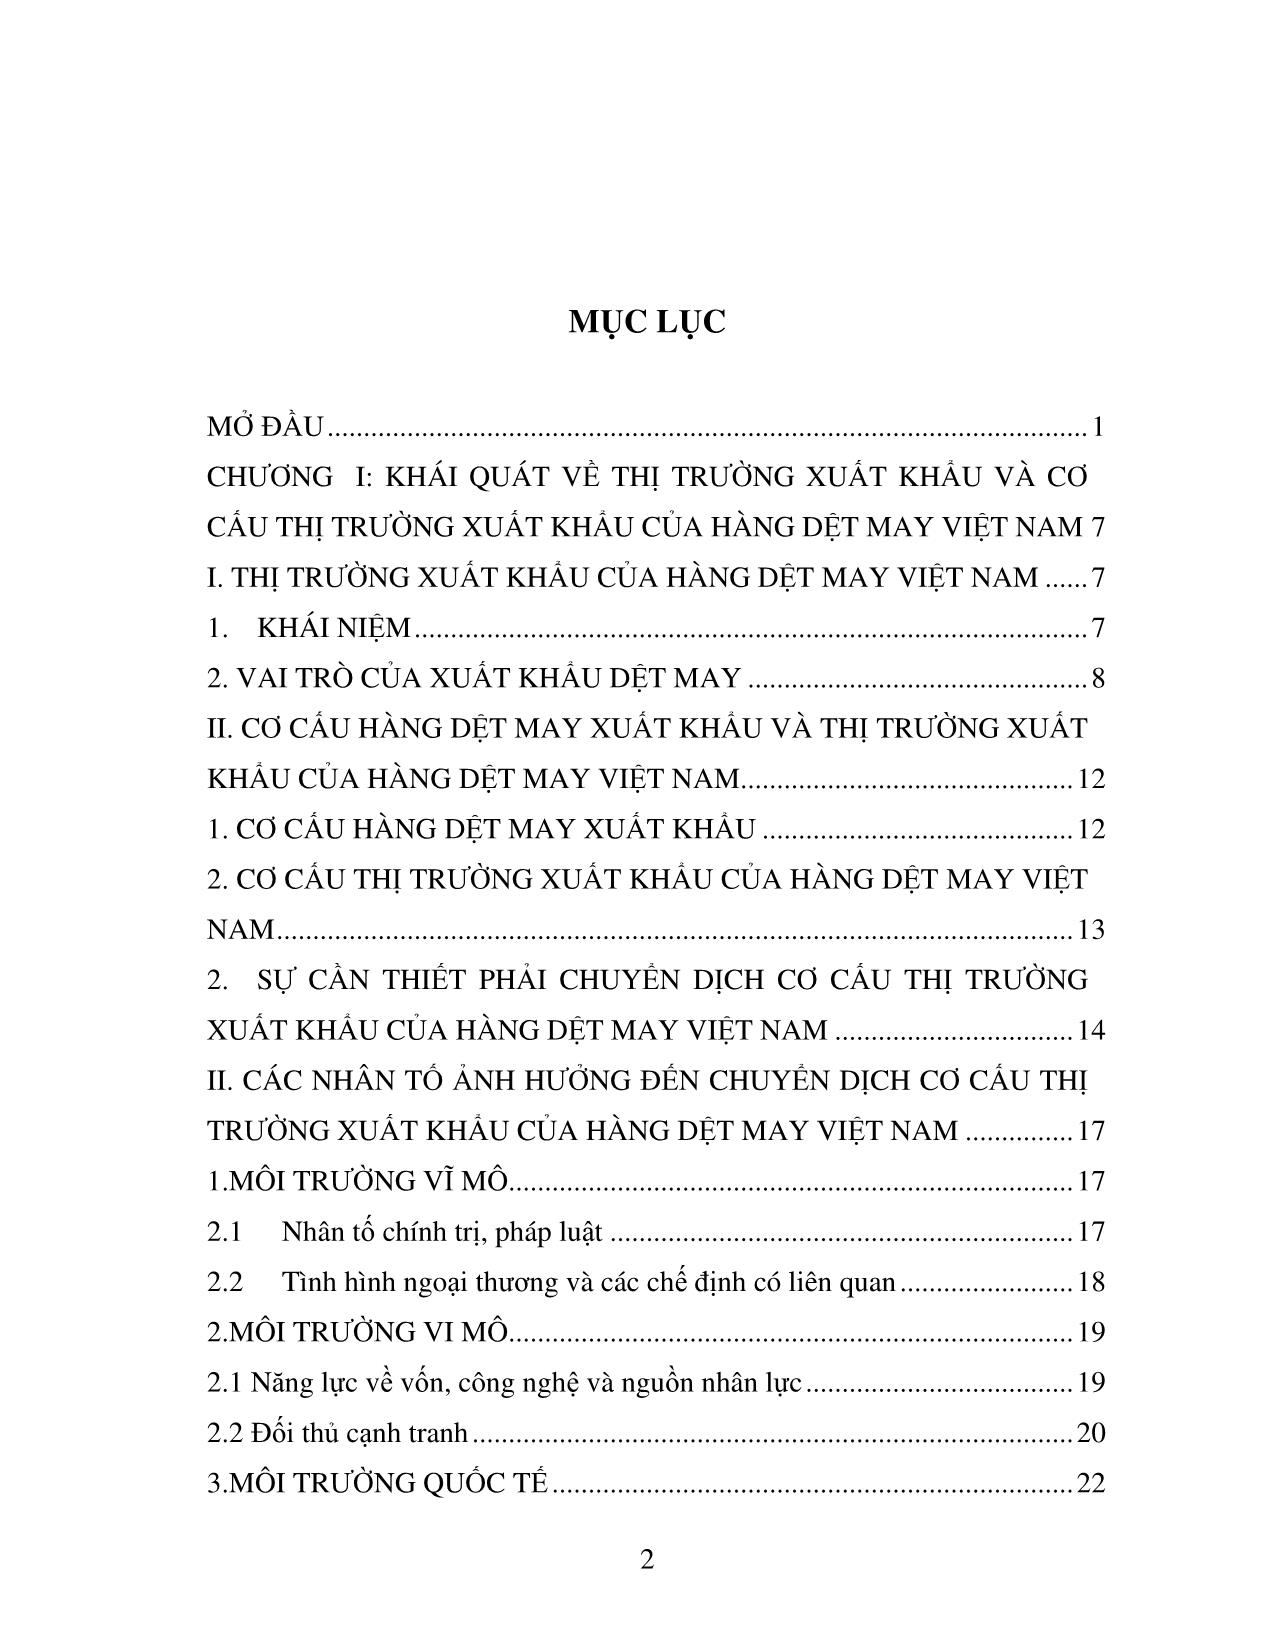 Luận văn Chuyển dịch cơ cấu thị trường xuất khẩu của hàng dệt may xuất khẩu của Việt Nam: Thực trạng và giải pháp trang 2